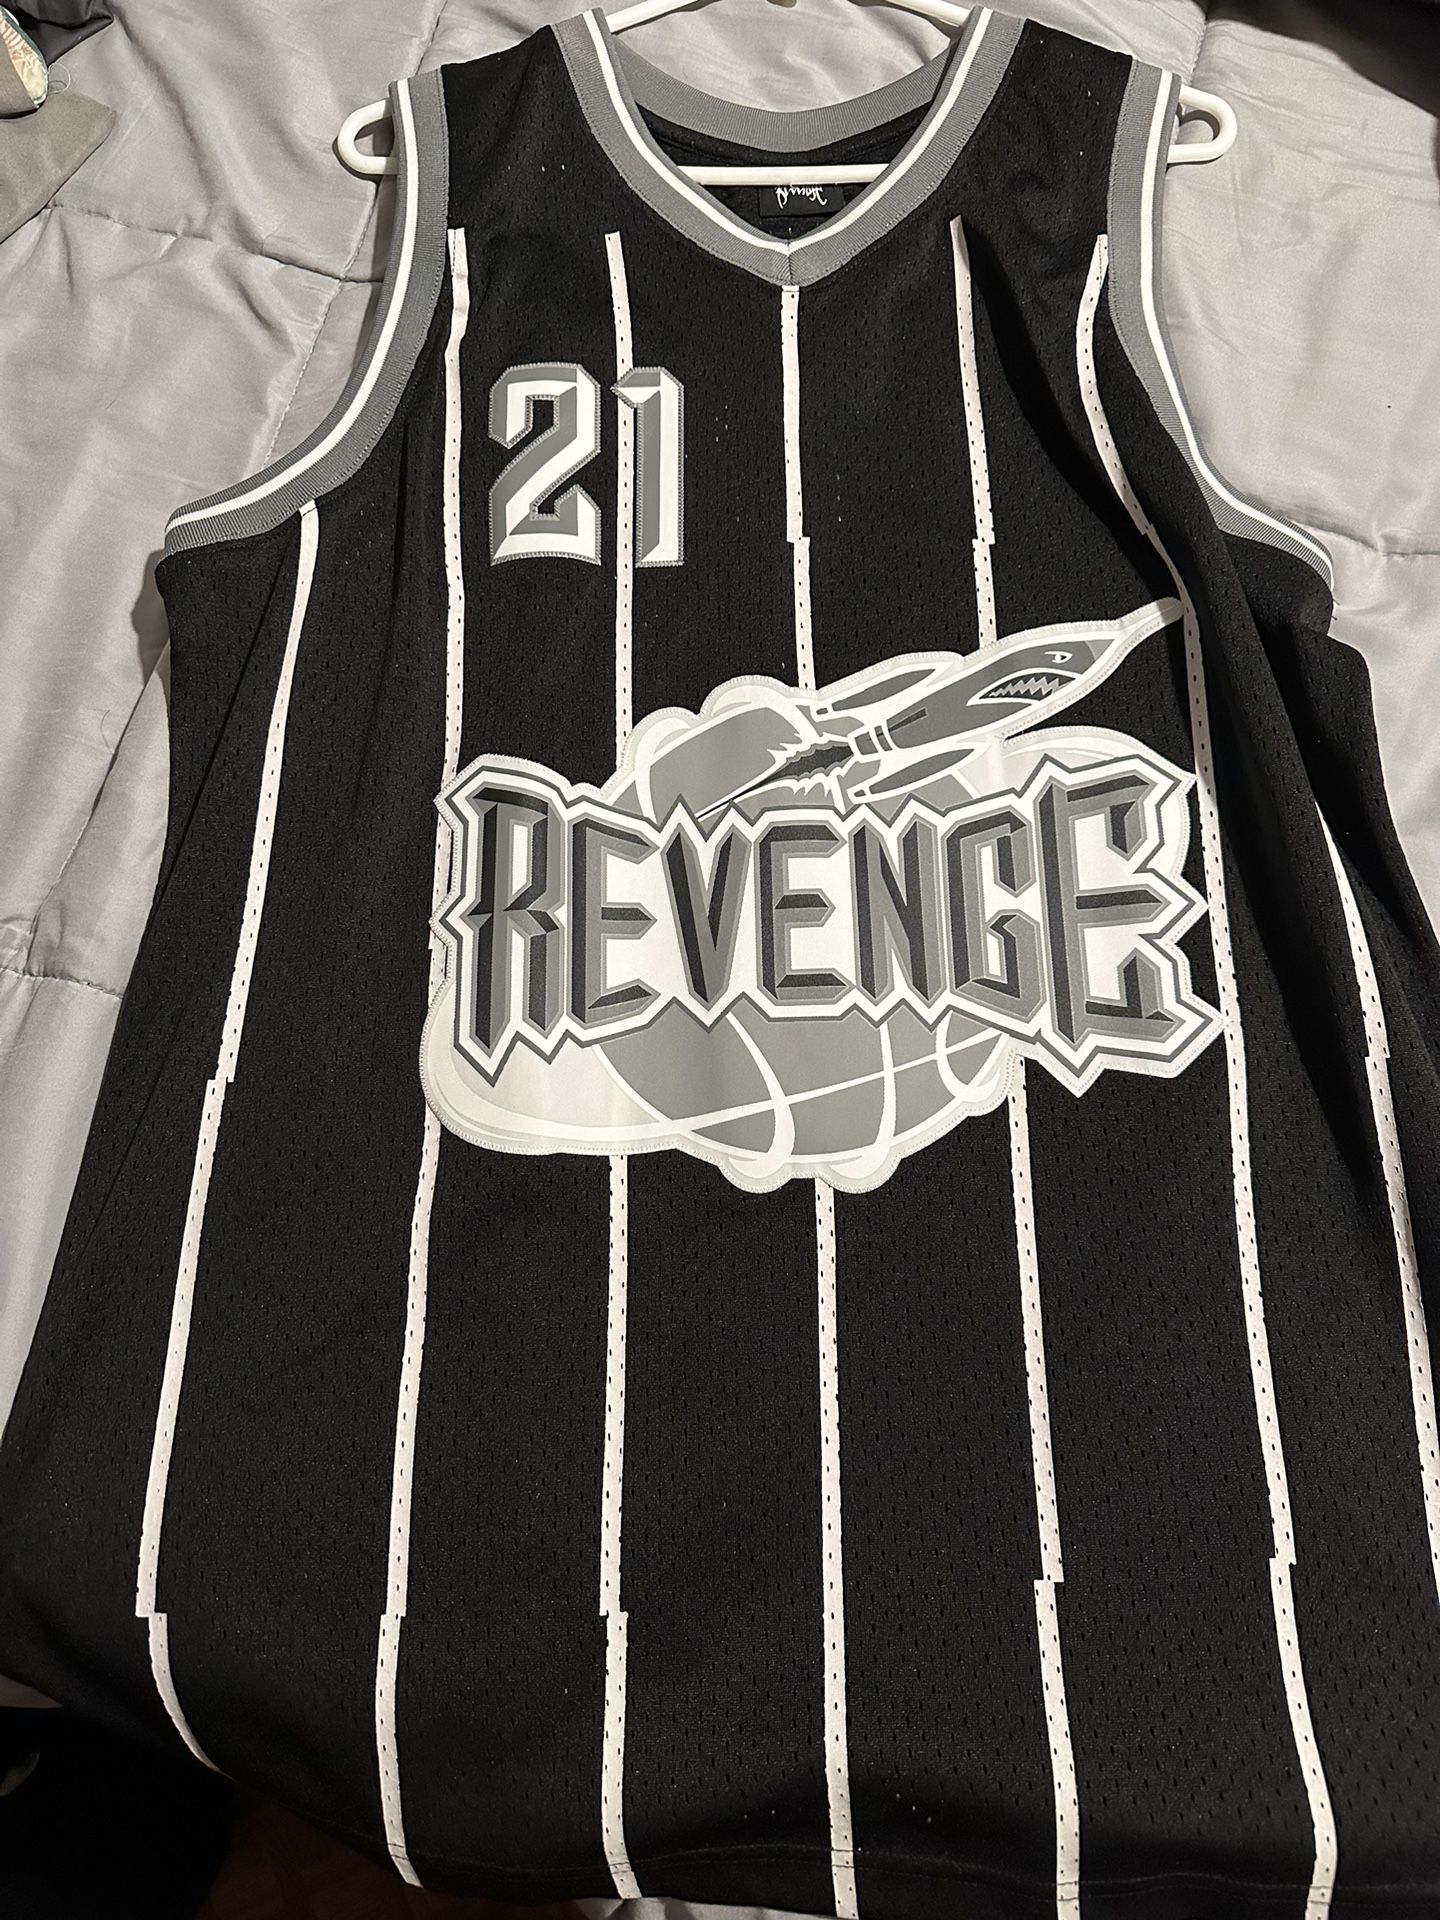 Revenge Jersey 